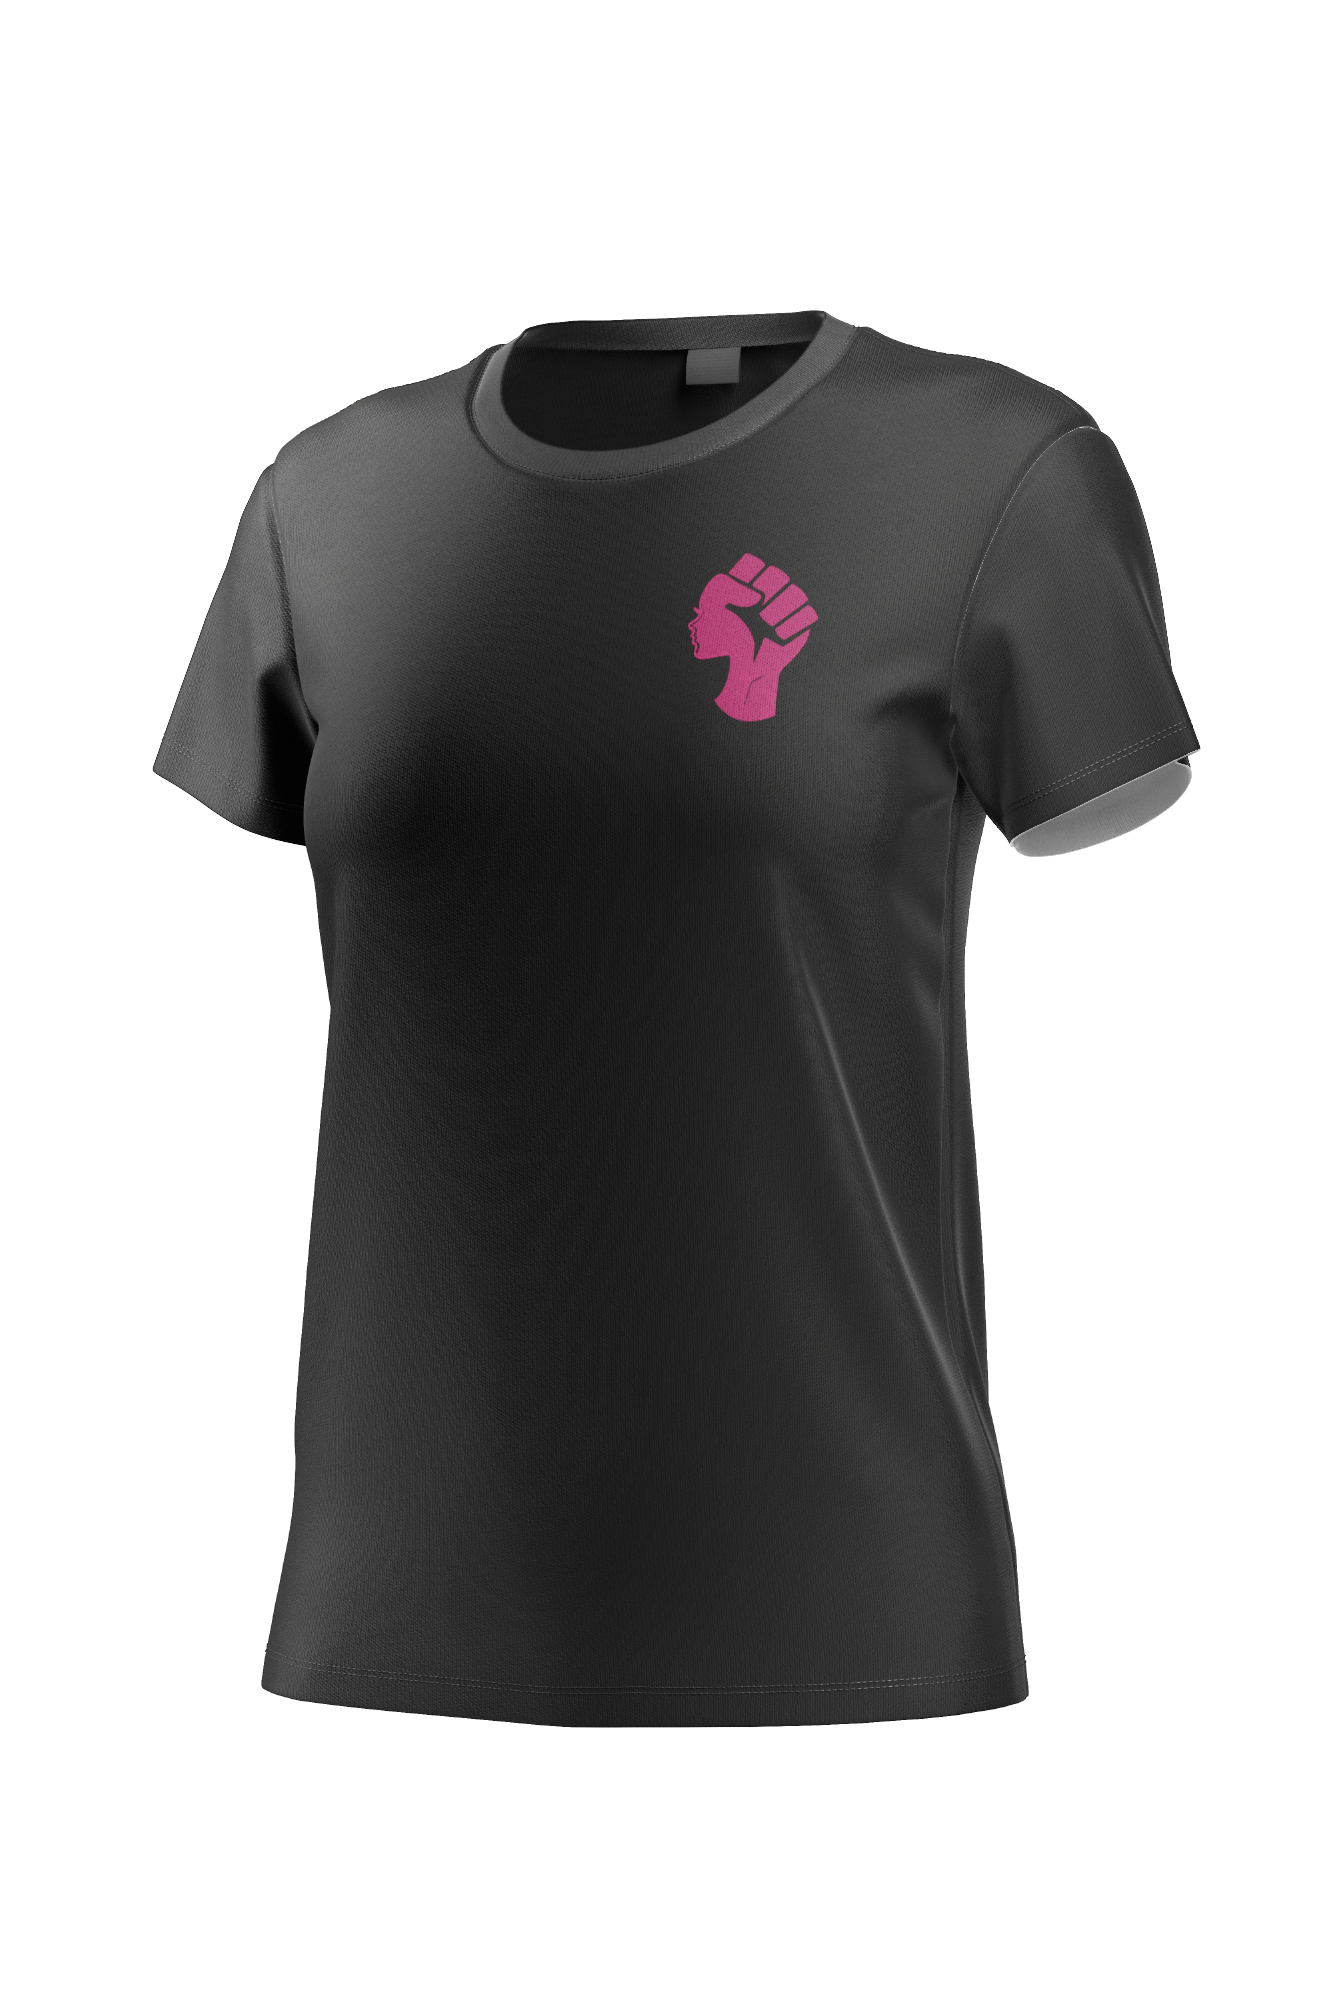 Camiseta mujer con símbolo Venus. Femeninista.